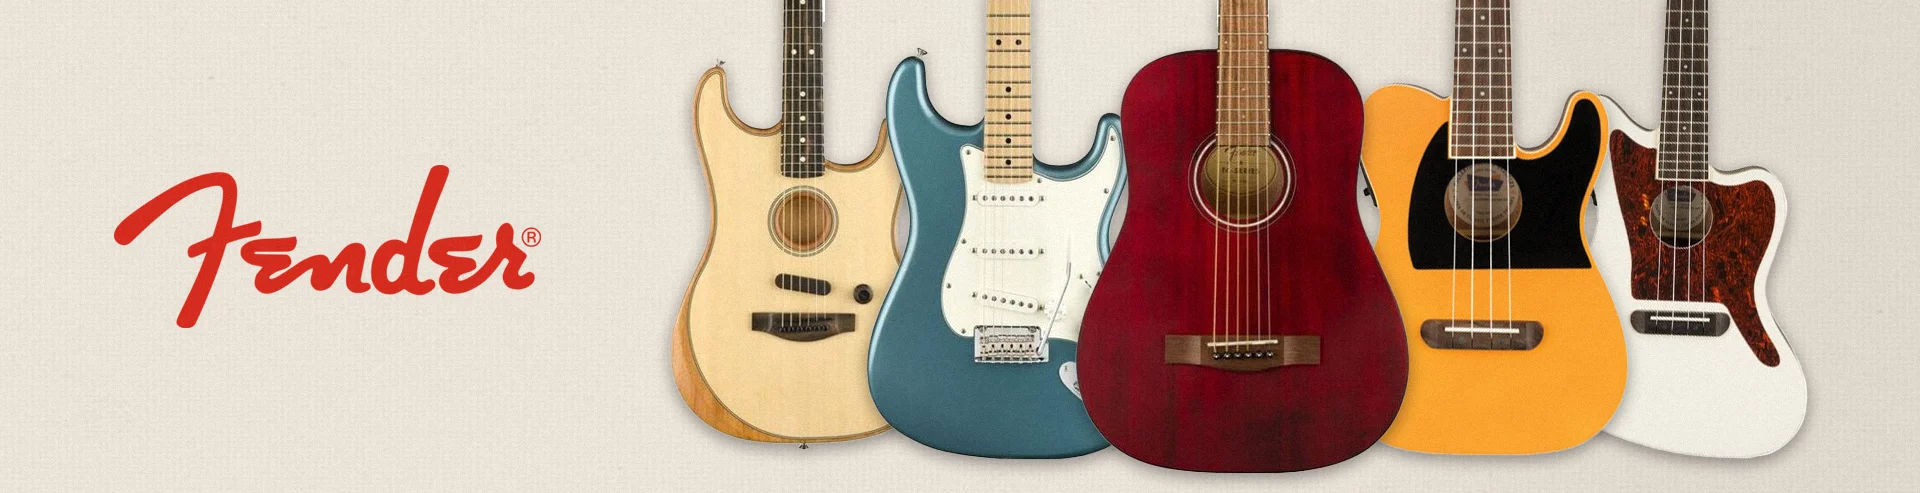 VM-Hero-Fender-Guitars-1920x493.webp